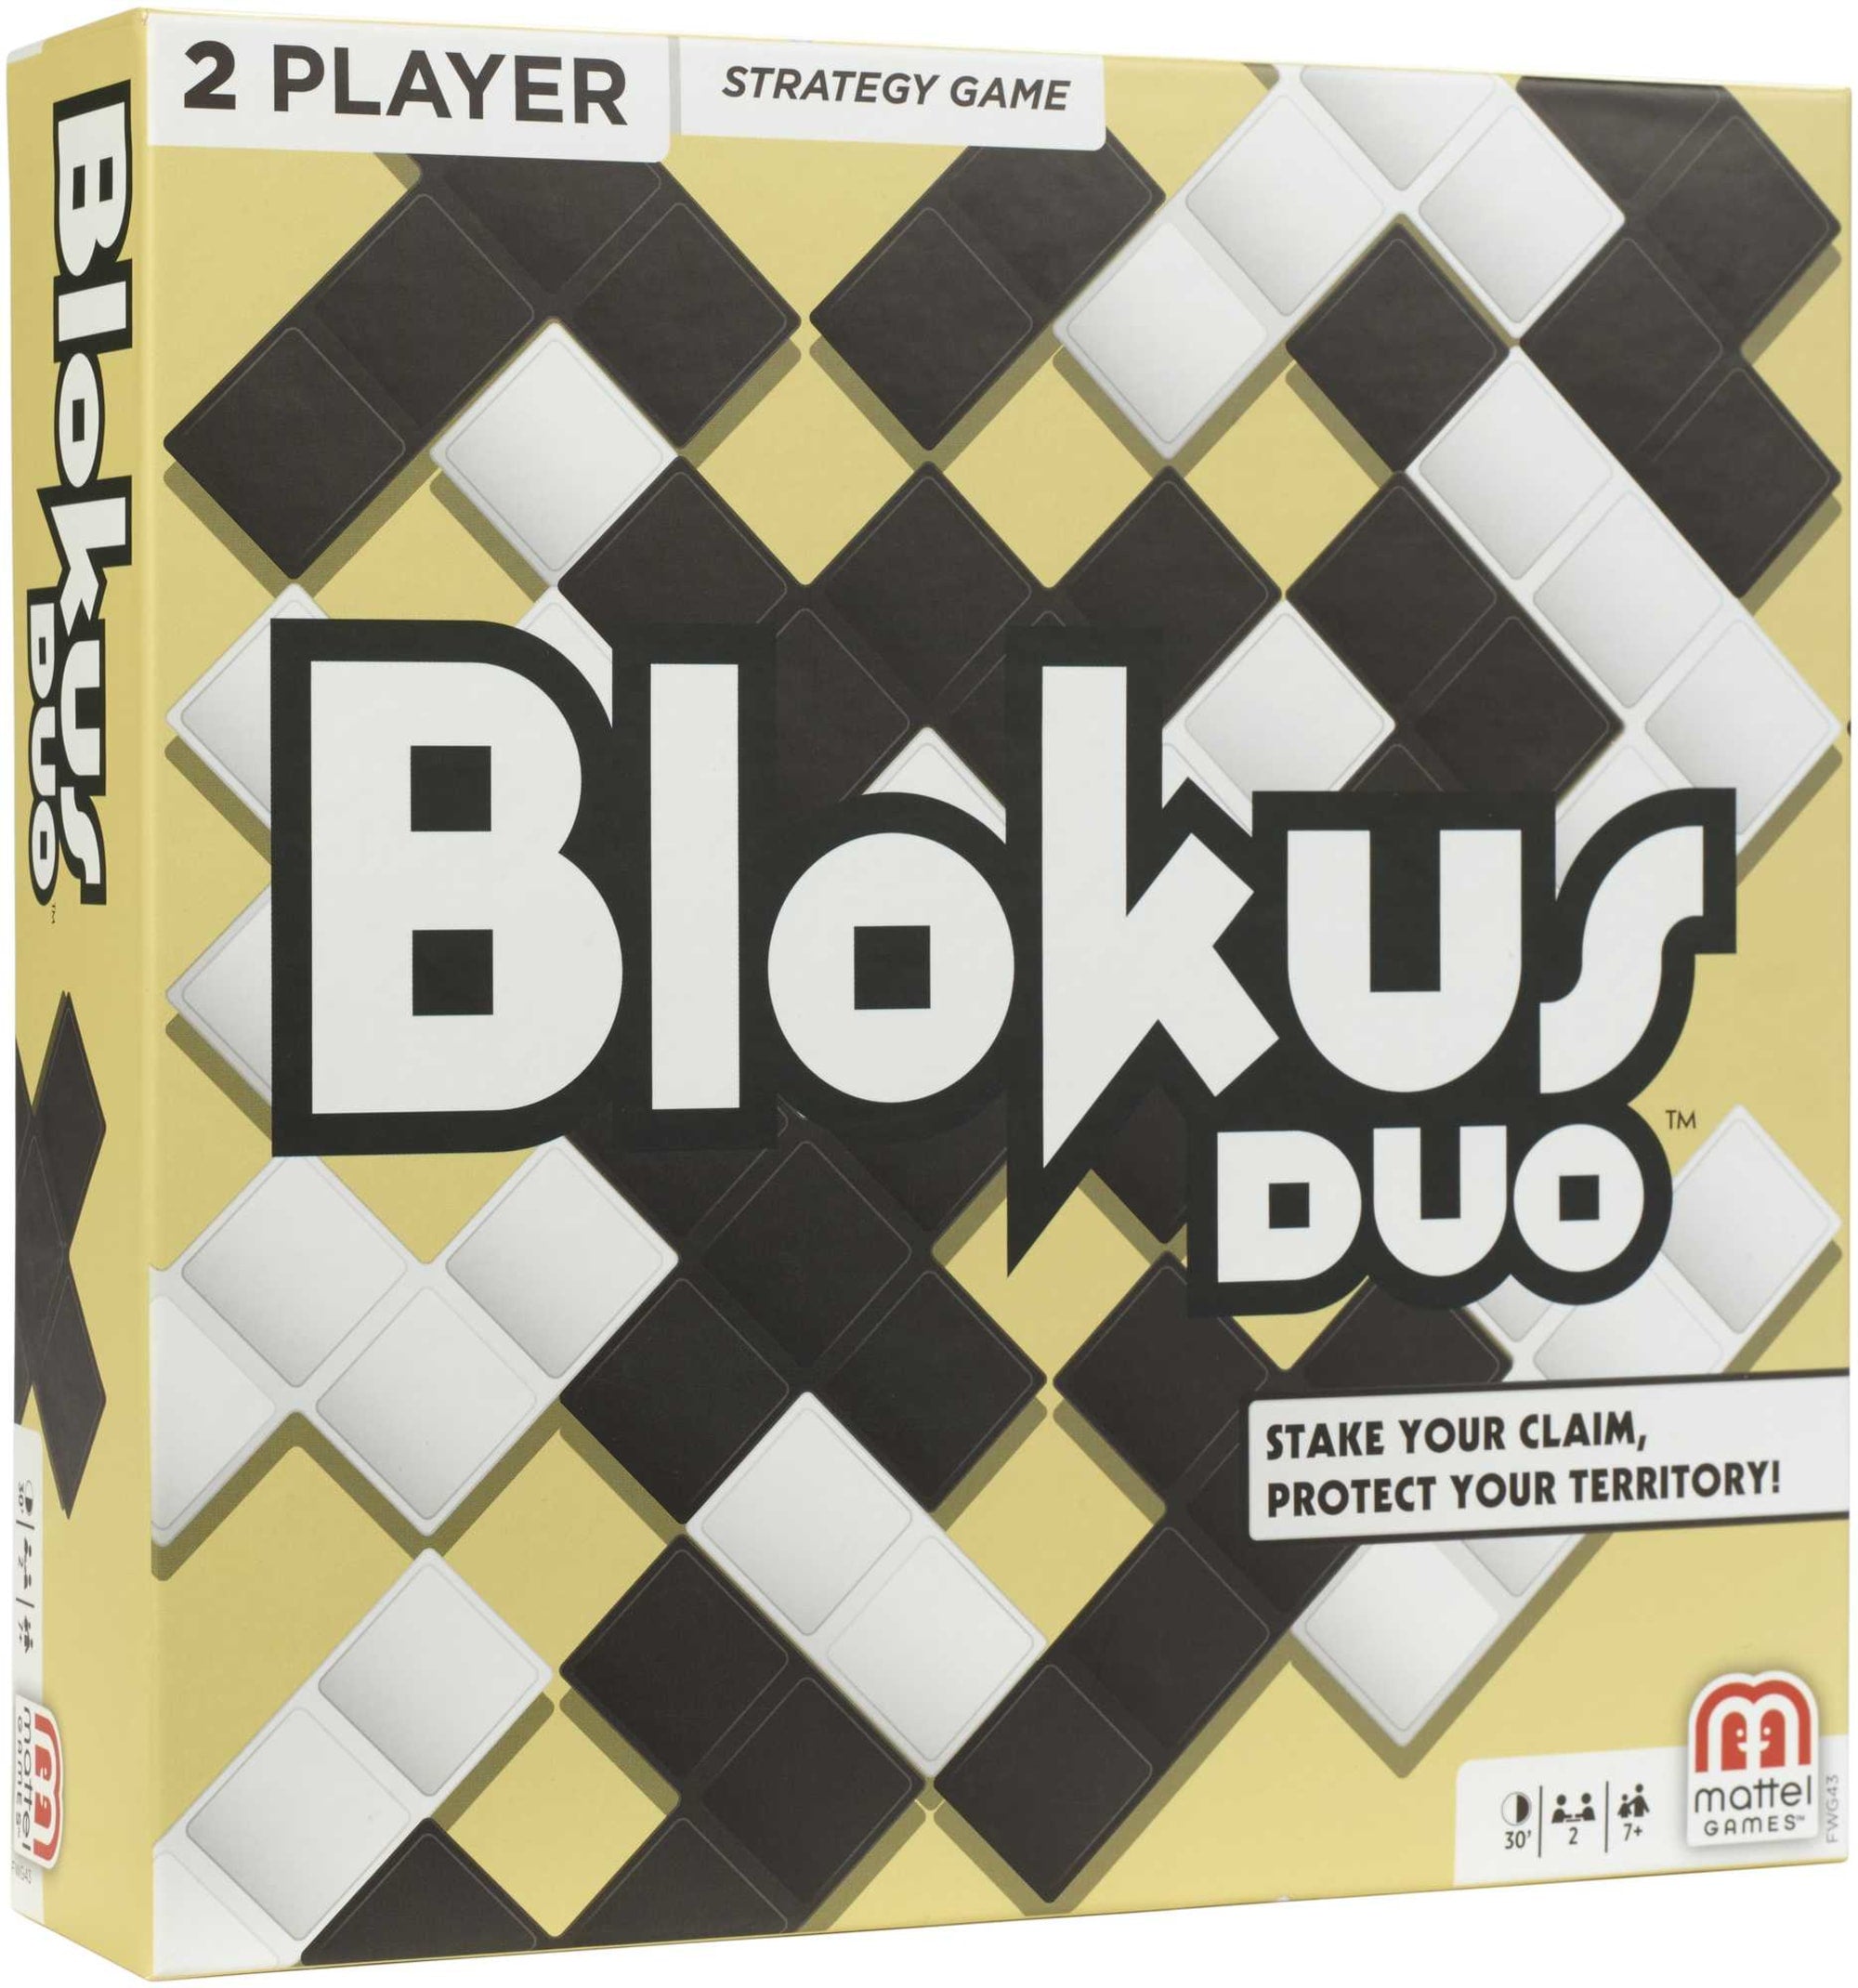 Blokus™ Duo Game  Blokus, Games, Game pieces